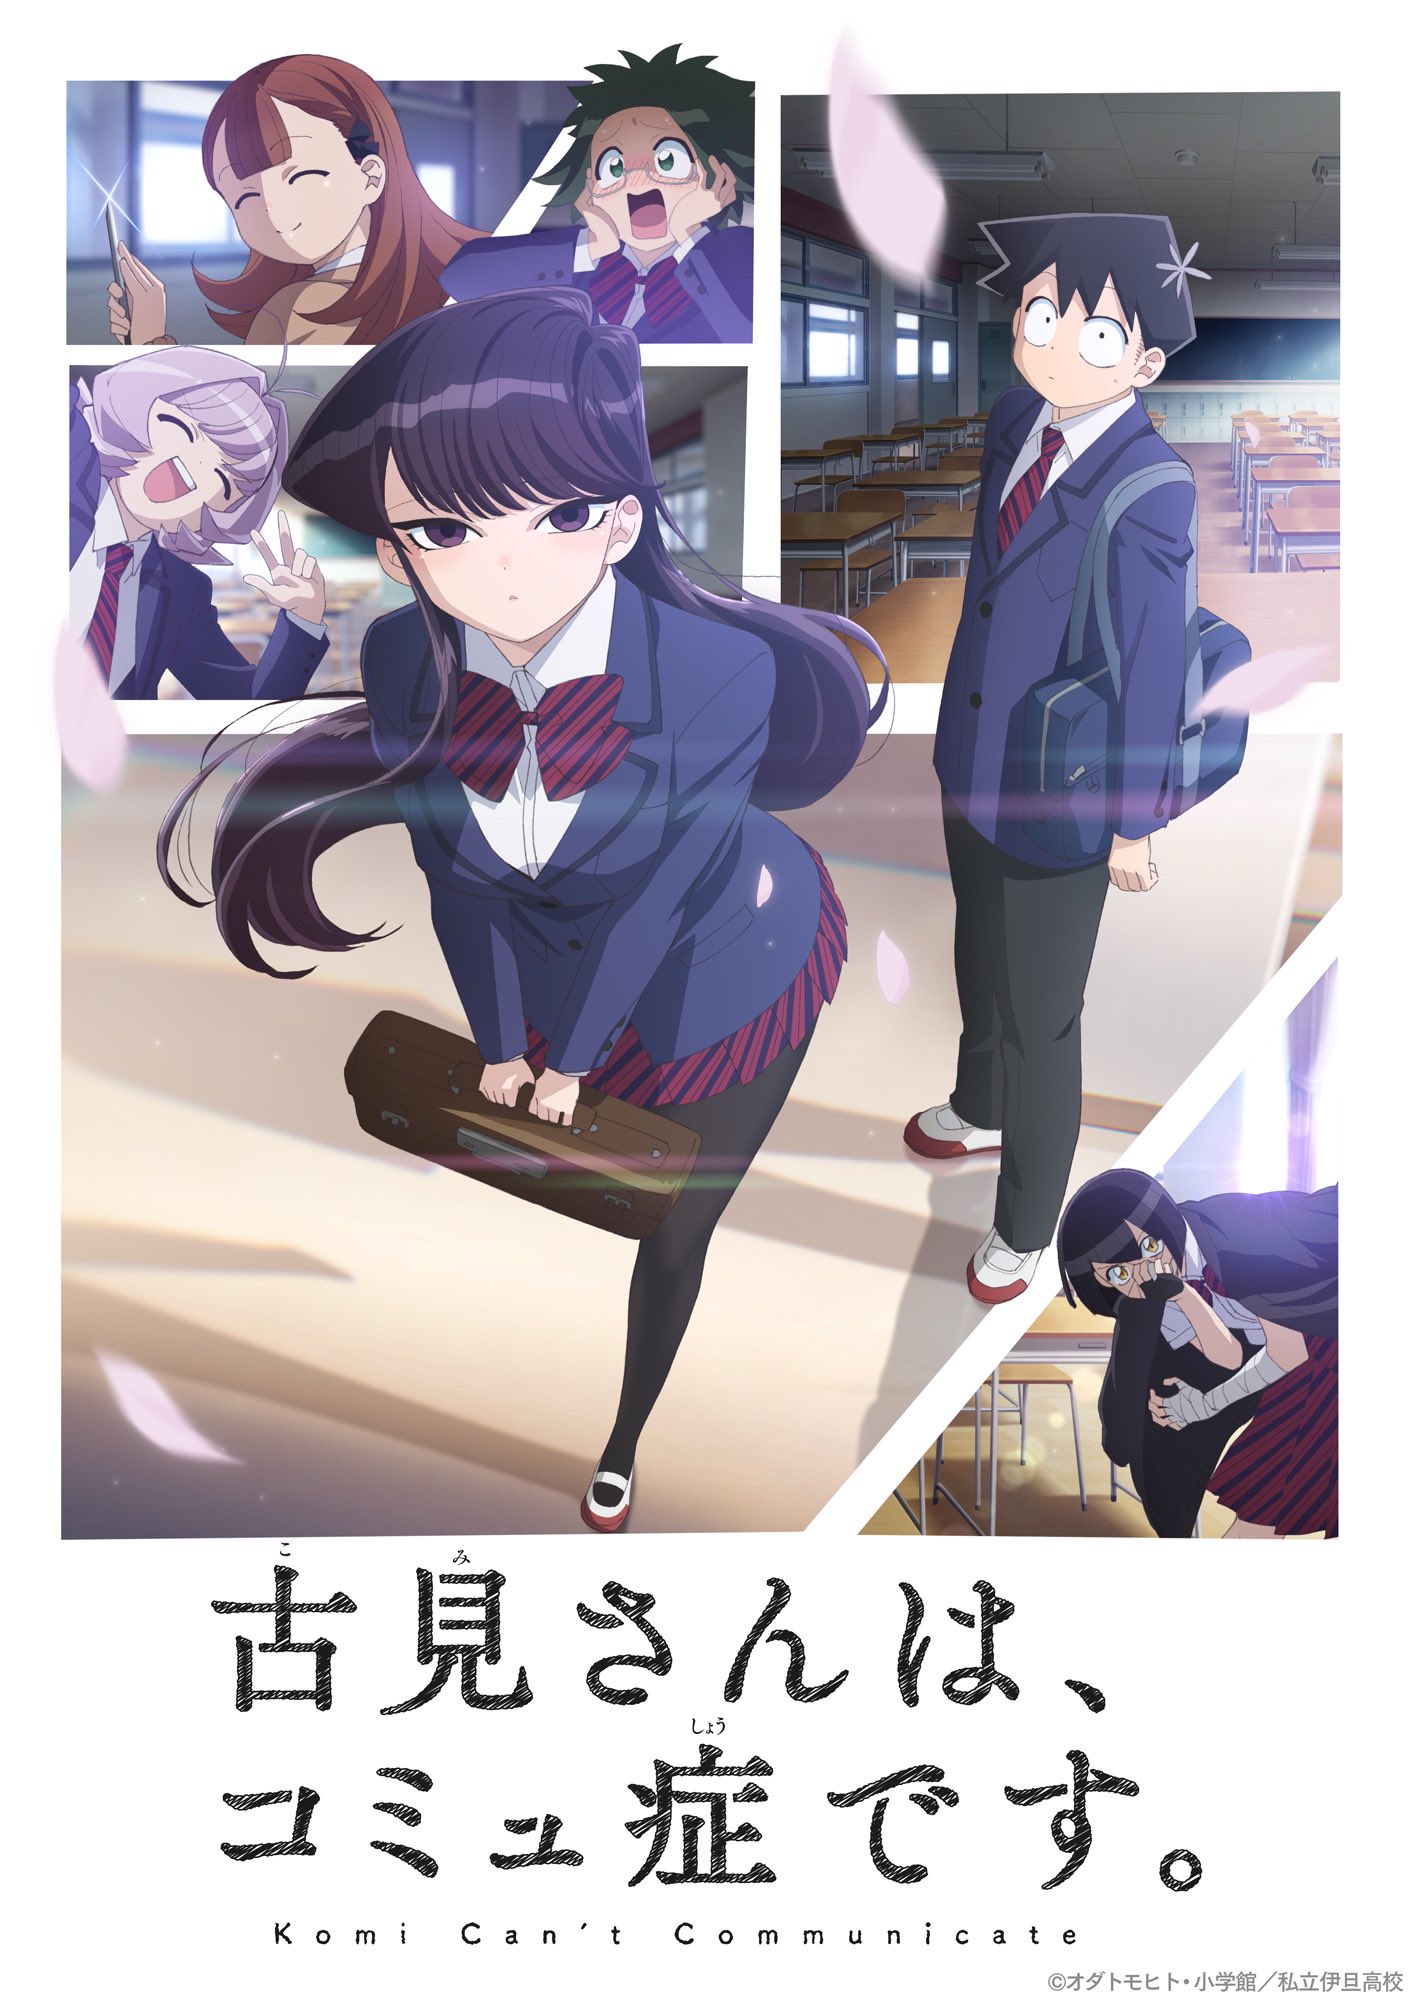 Komi-san wa, Communication Shougai desu tem anuncio de anime